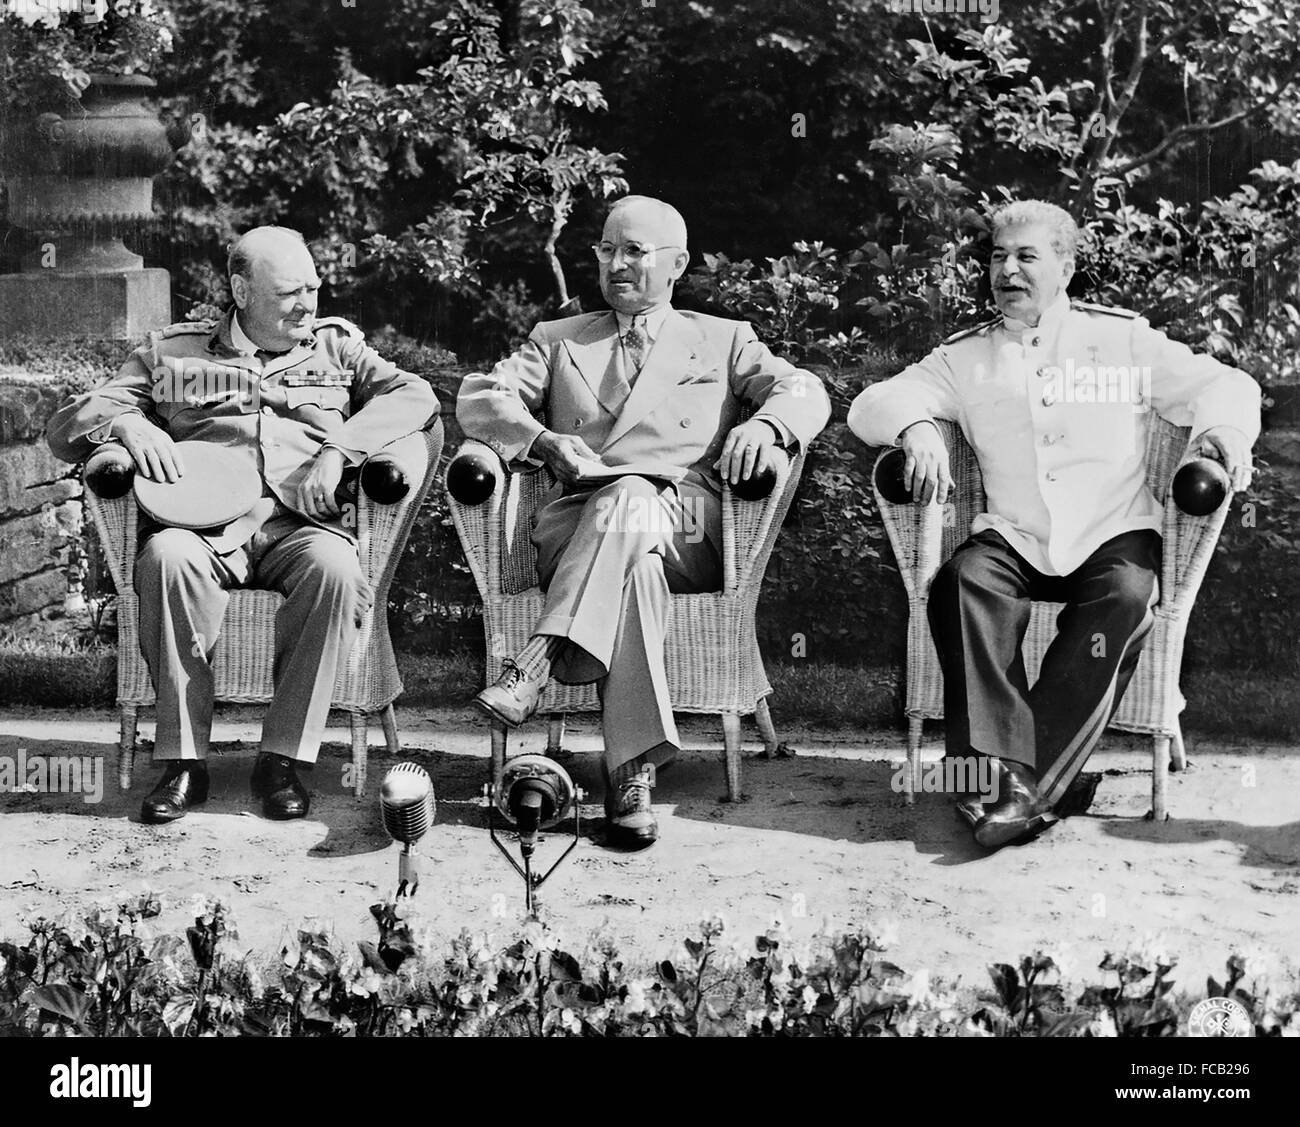 Potsdamer Konferenz, 1945. Der britische Premierminister Winston Churchill, US-Präsident Harry S Truman und der sowjetische Premier Joseph Stalin auf der Potsdamer Konferenz (manchmal bekannt als der Berliner Konferenz) am 25. Juli 1945 Stockfoto